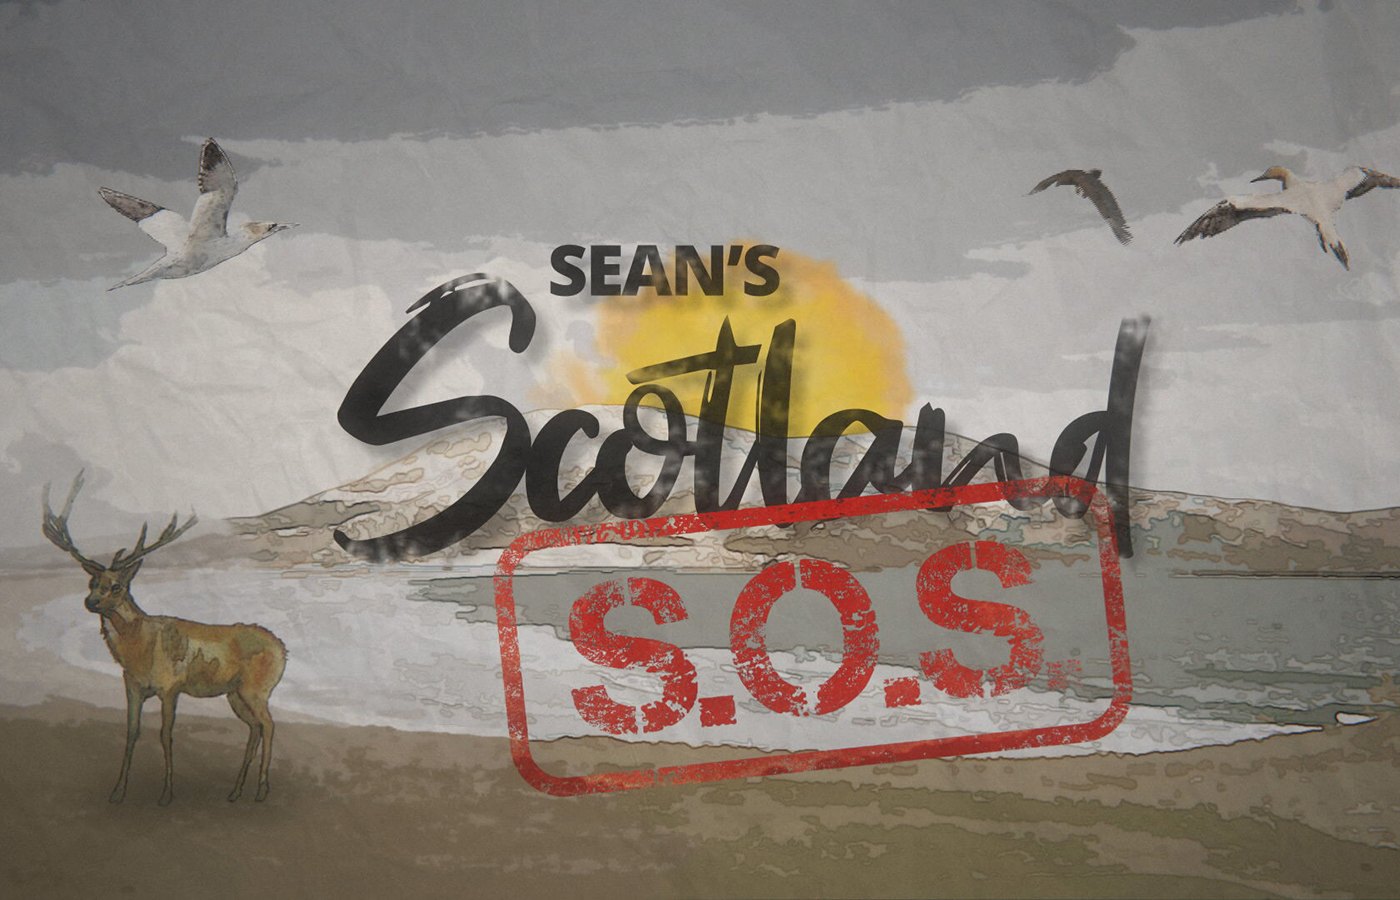 Sean's Scotland SOS.